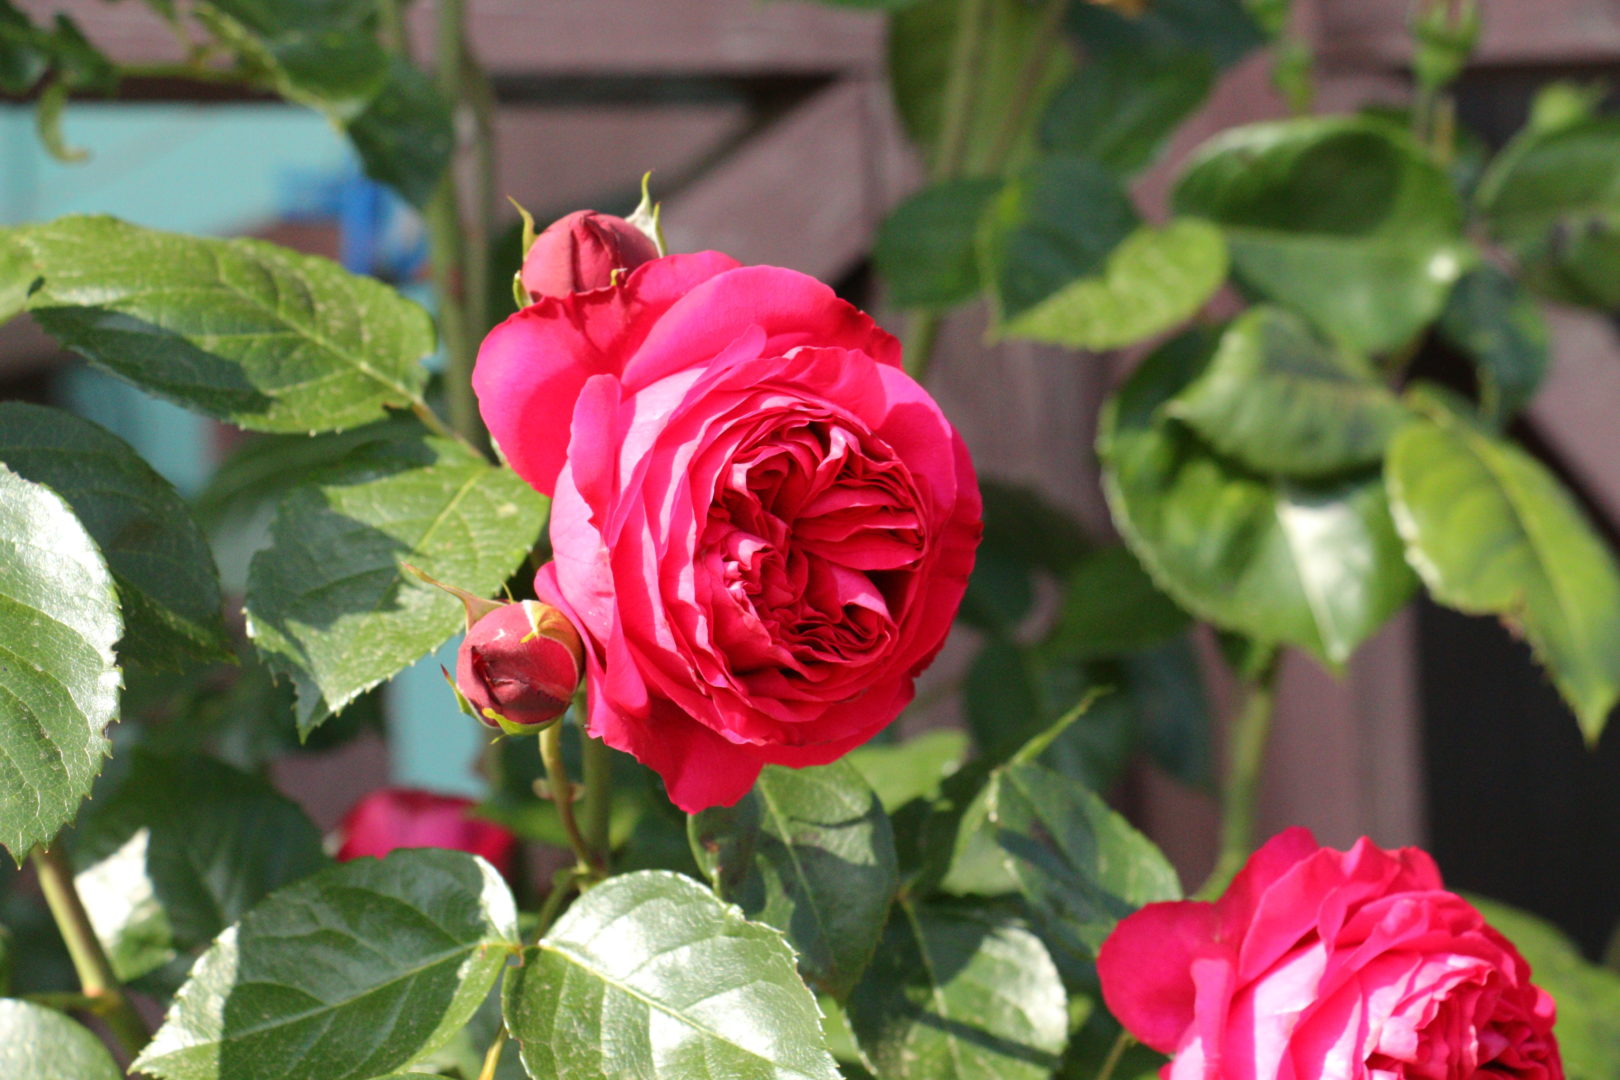 Крестовидно-розеточная, или квадратная форма цветка розы